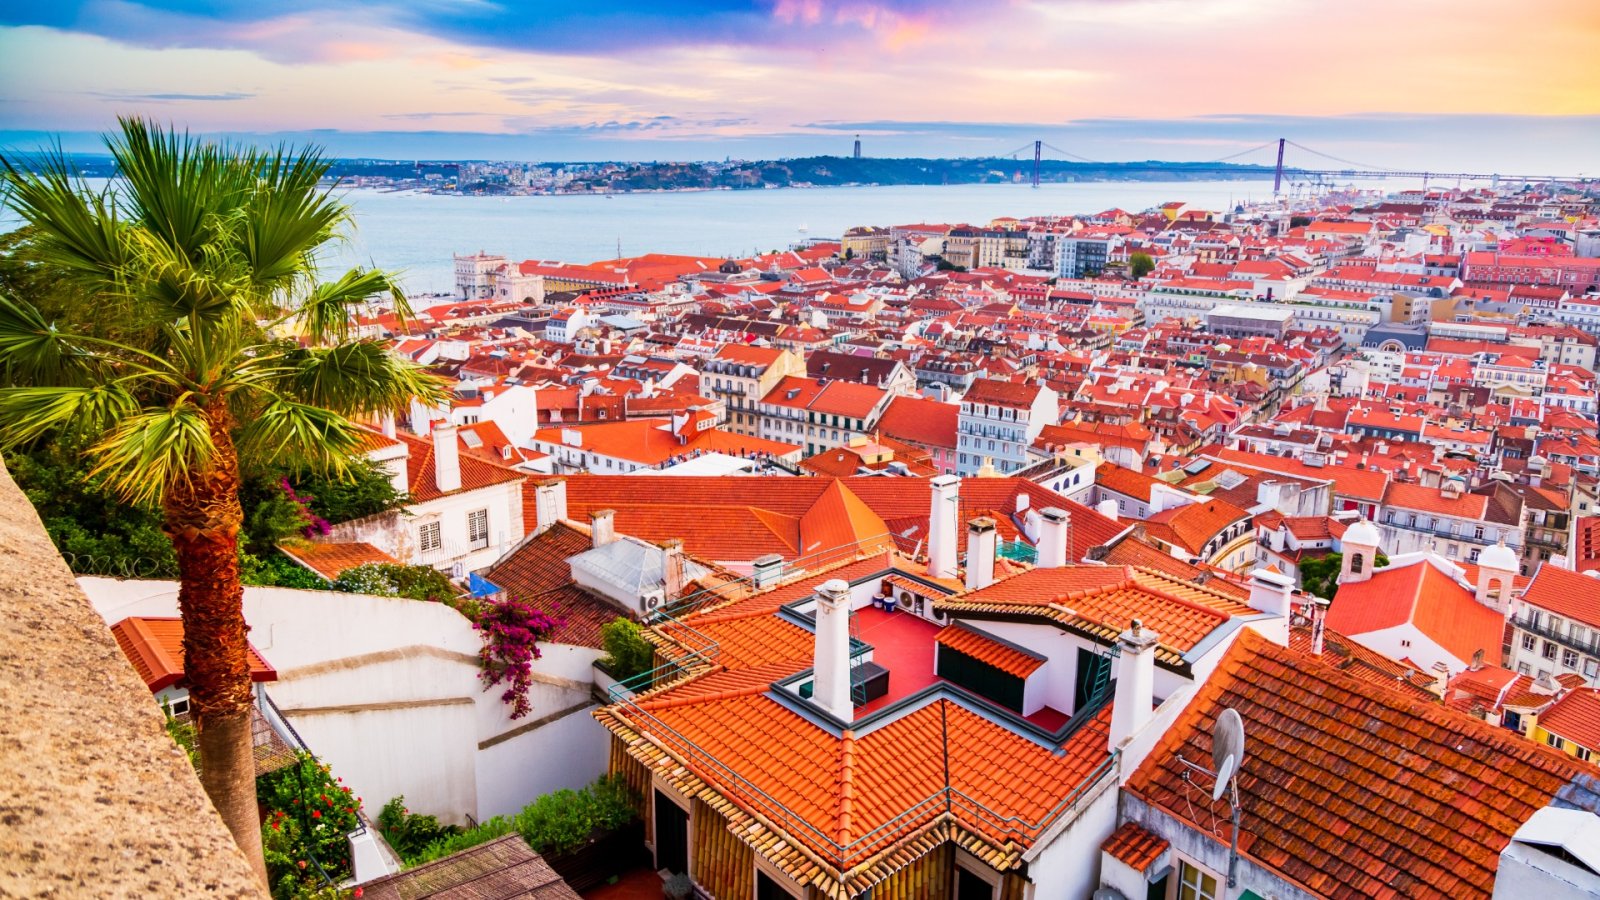 Lisbona: la gemma nascosta di storia, fascino e vivacità d'Europa